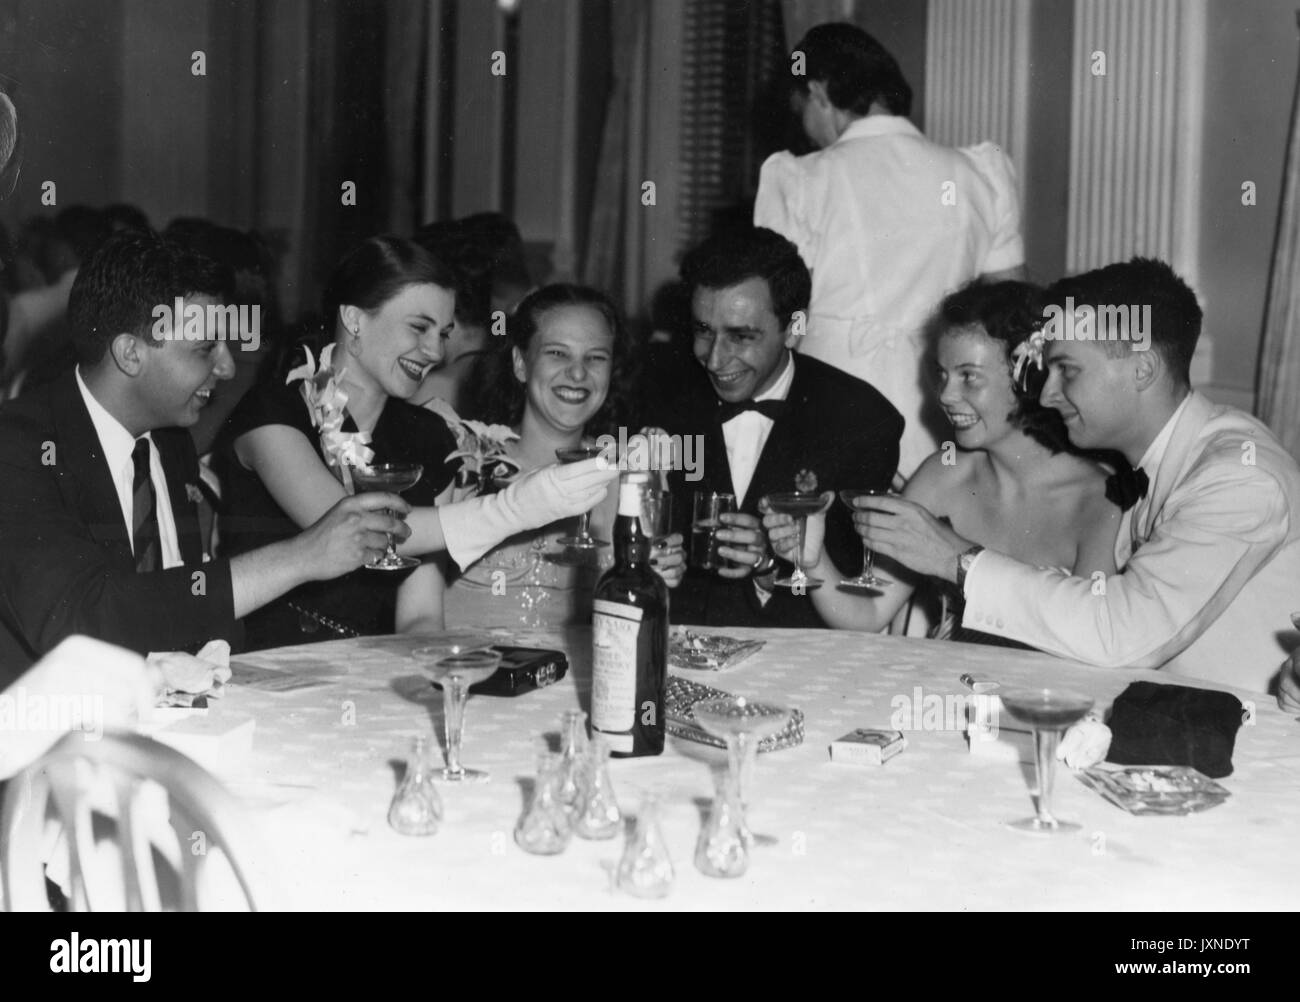 La vie étudiante, Premier banquet et danse les aînés et leurs dates toasting each other au banquet et danse senior, tenue à l'Hôtel du Sud, 1947. Banque D'Images